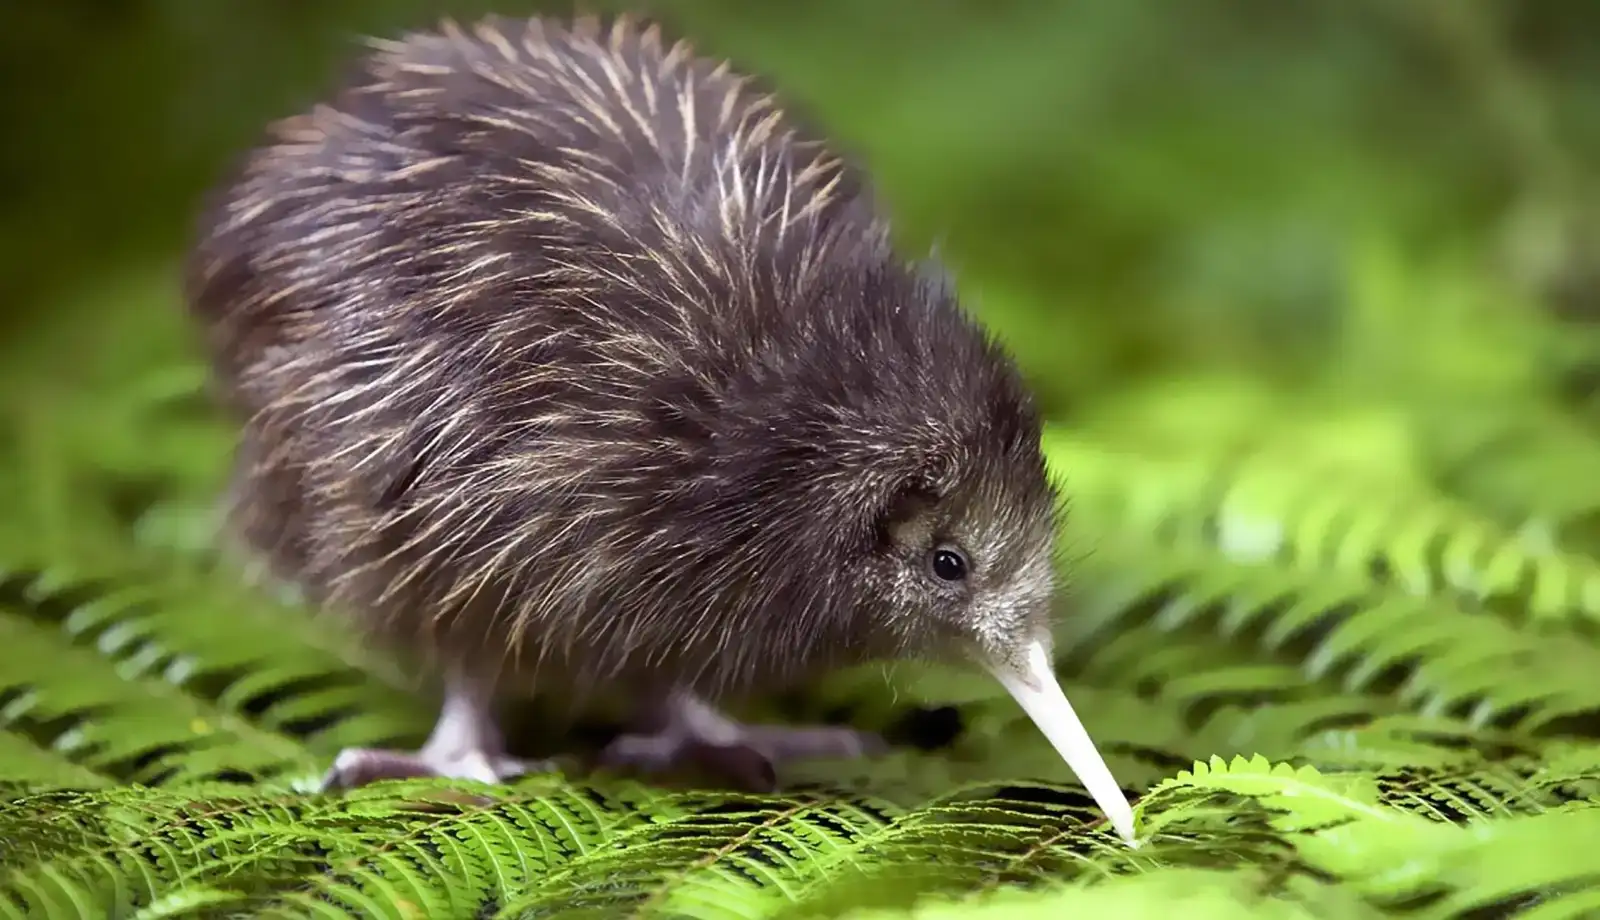 Chim Kiwi - biểu tượng của New Zealand